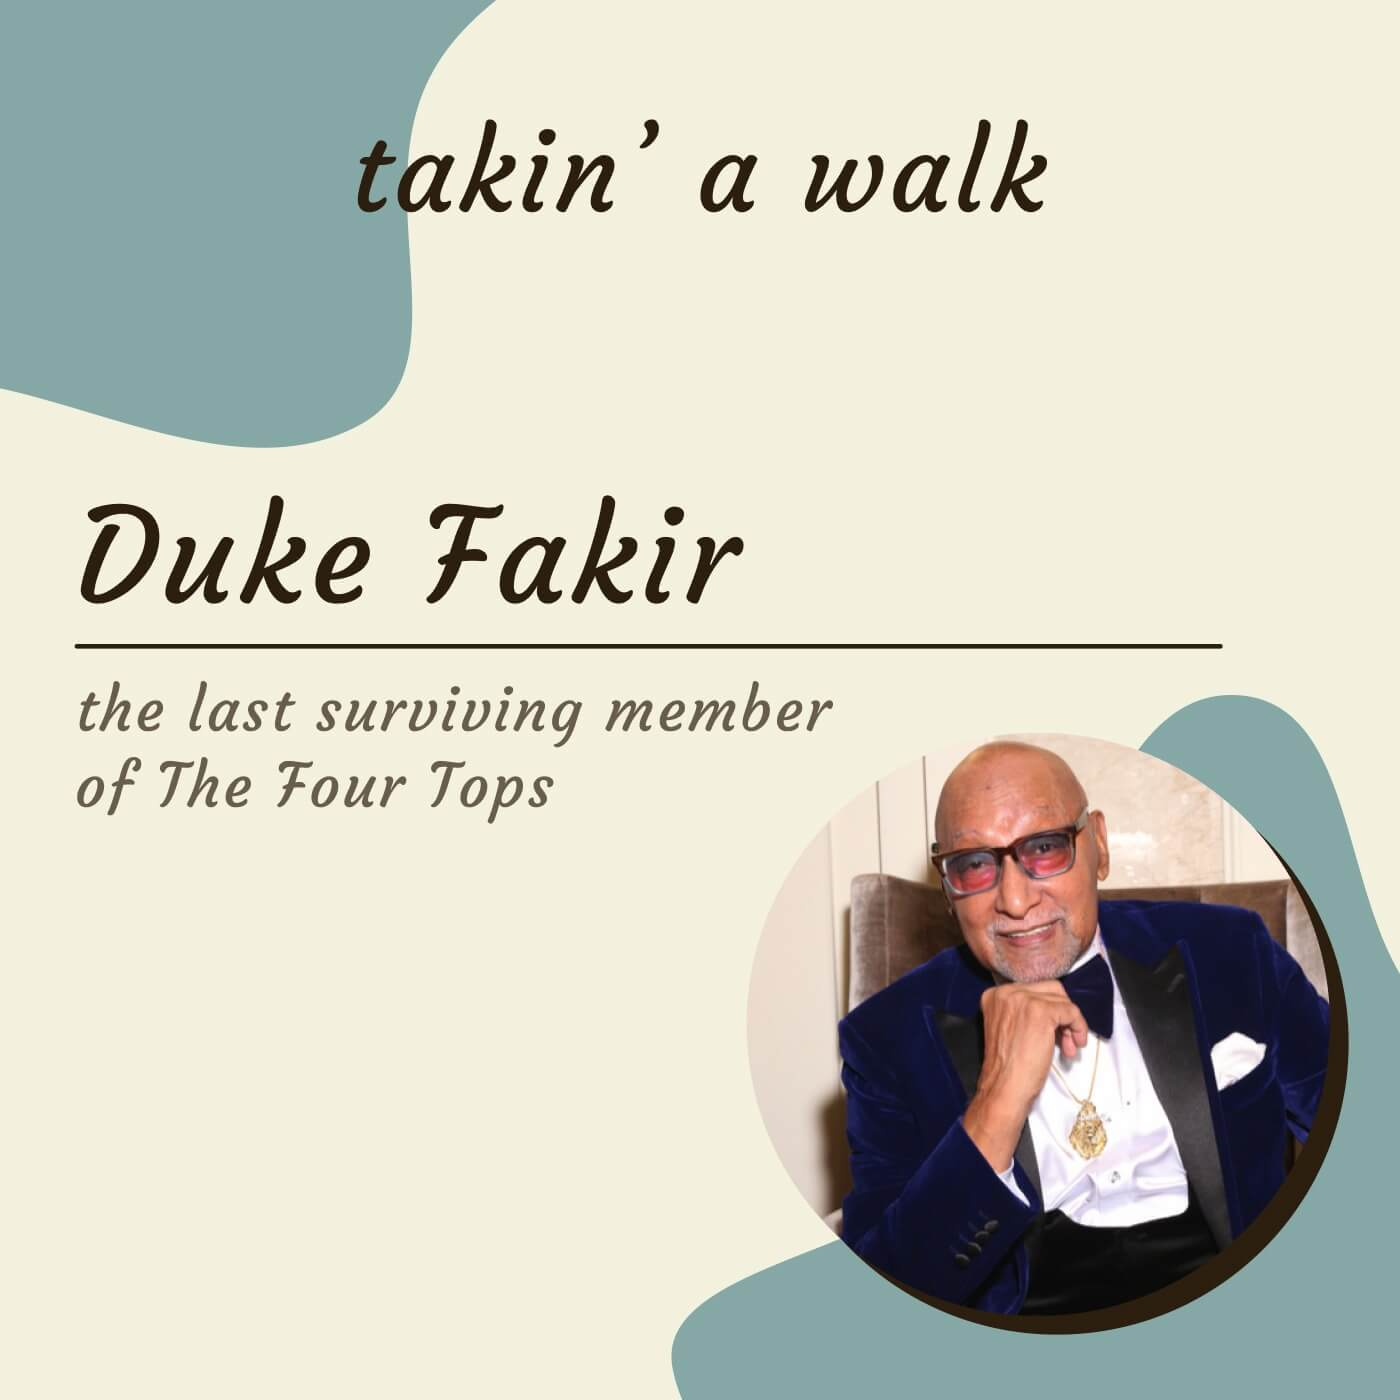 Duke Fakir, The Last Remaining Member of The Four Tops.